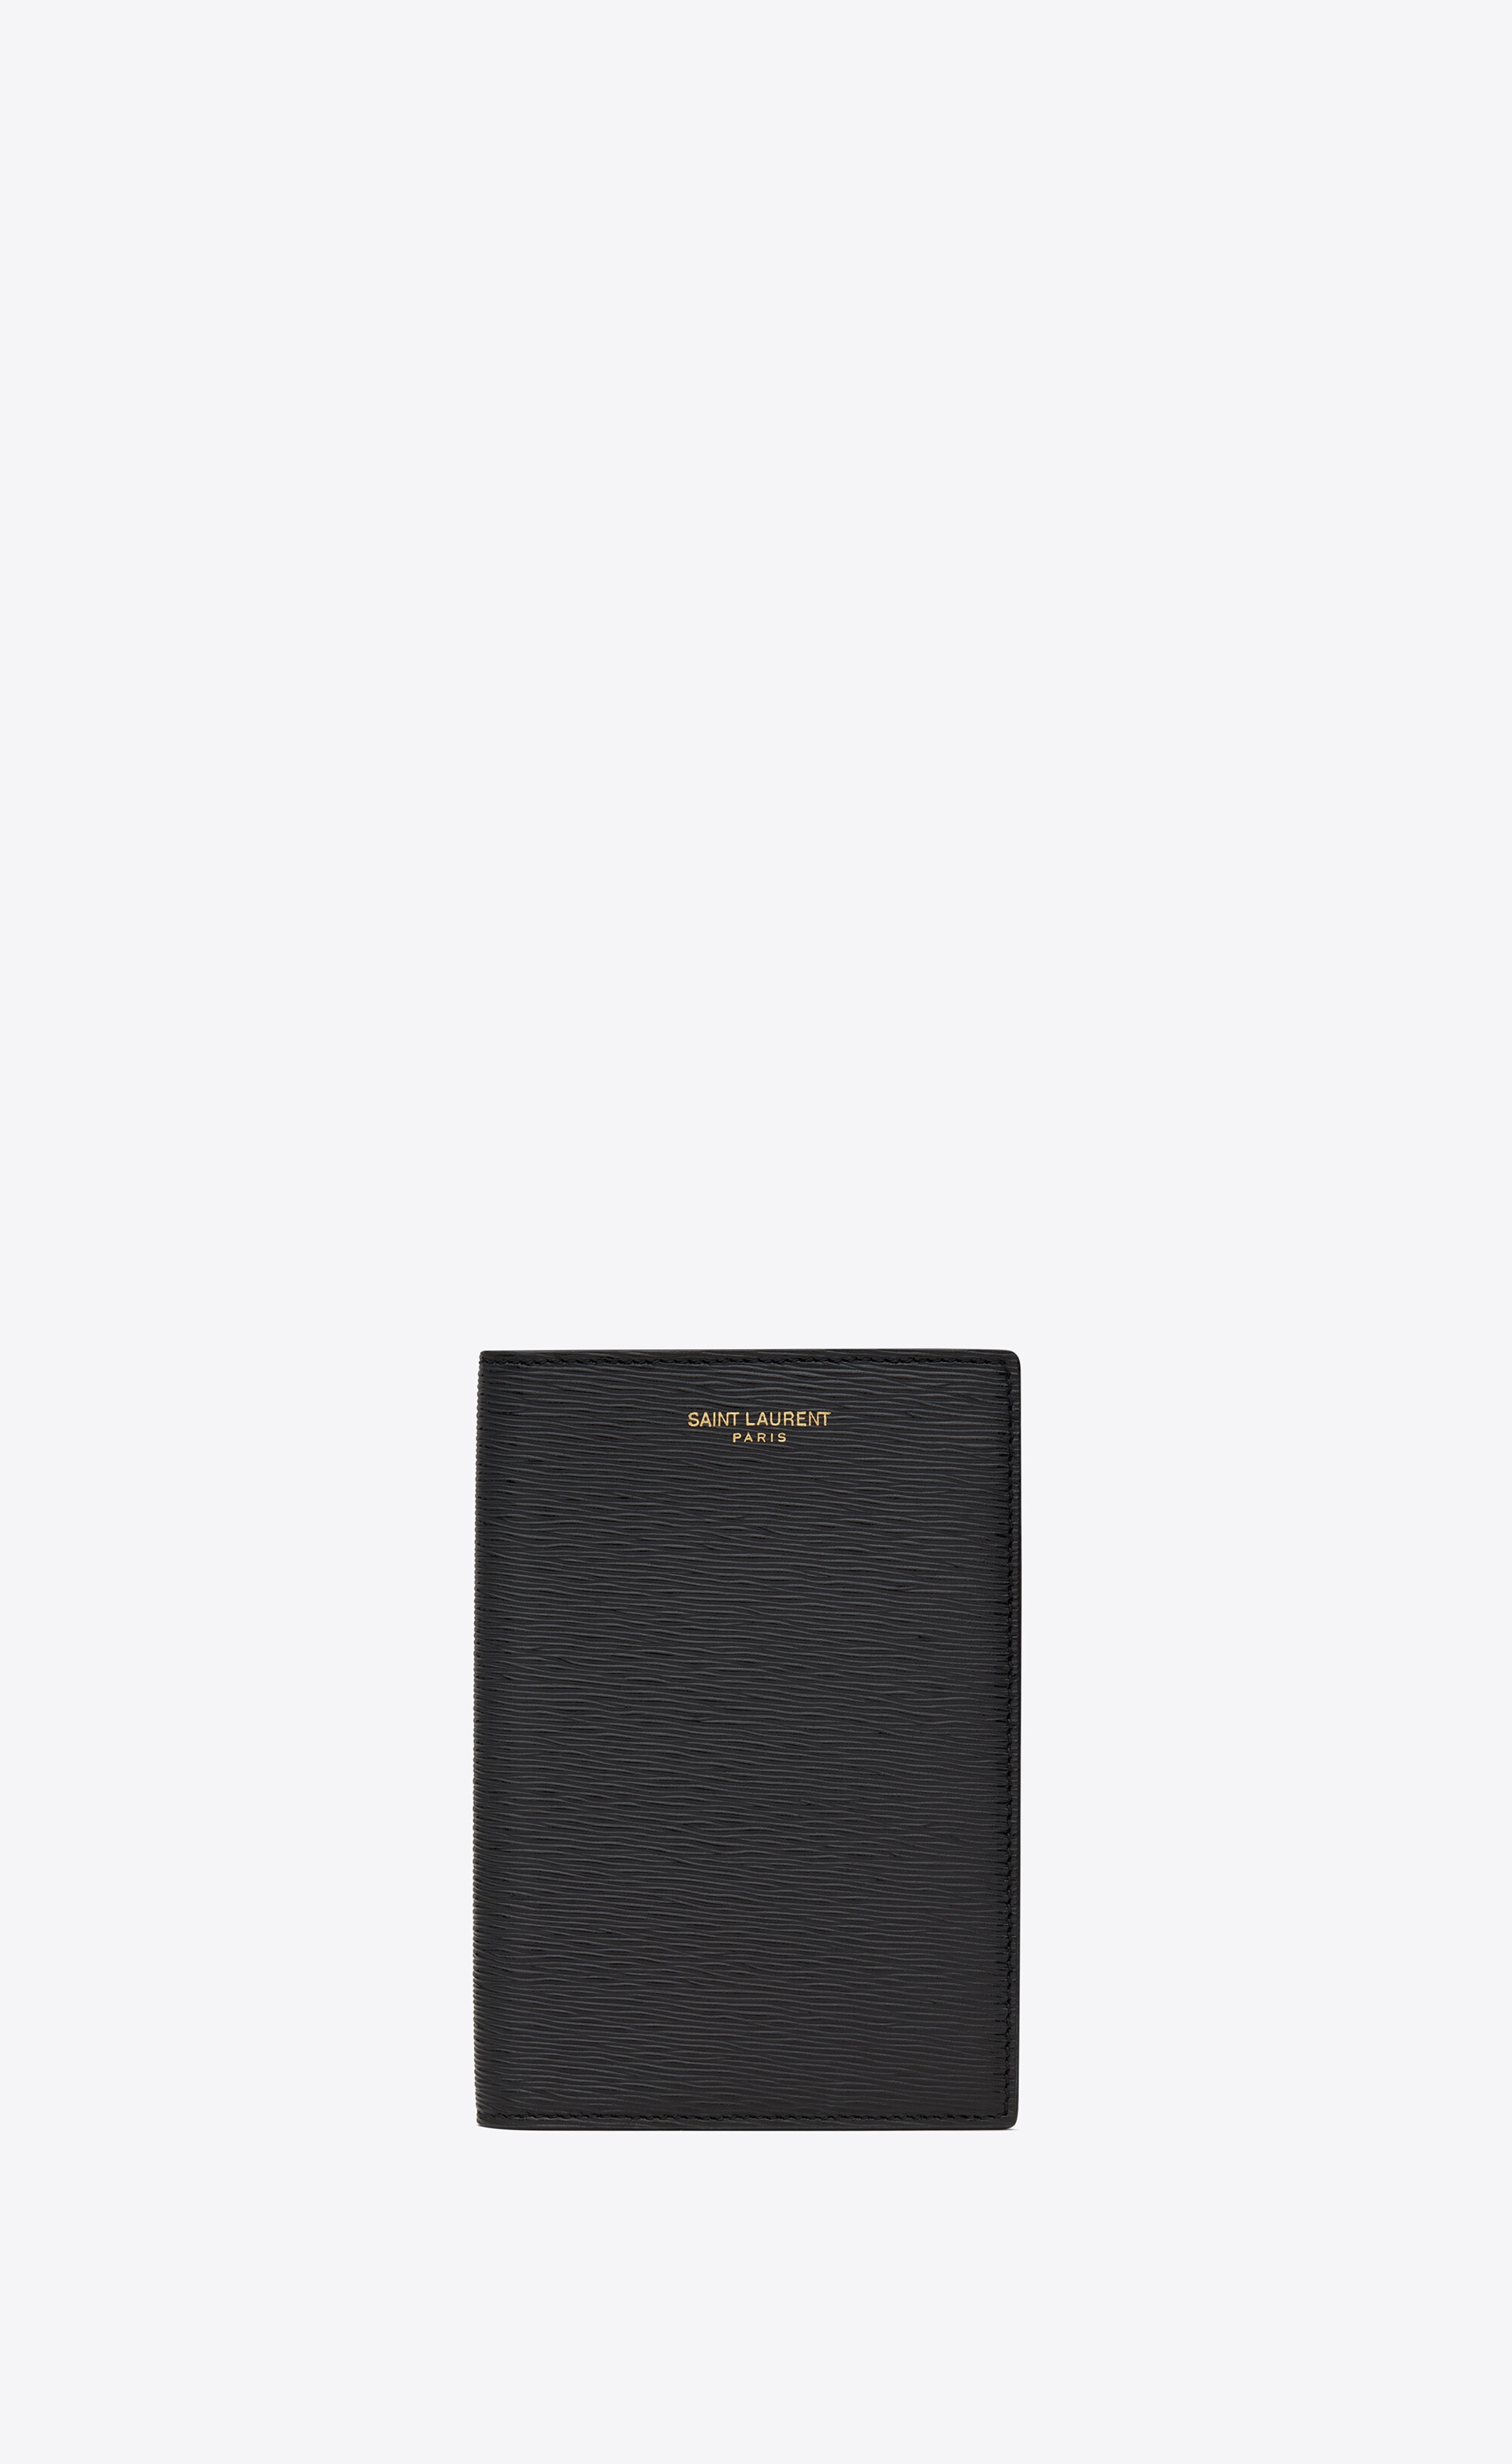 saint laurent paris passport case in ripple-embossed leather - 1